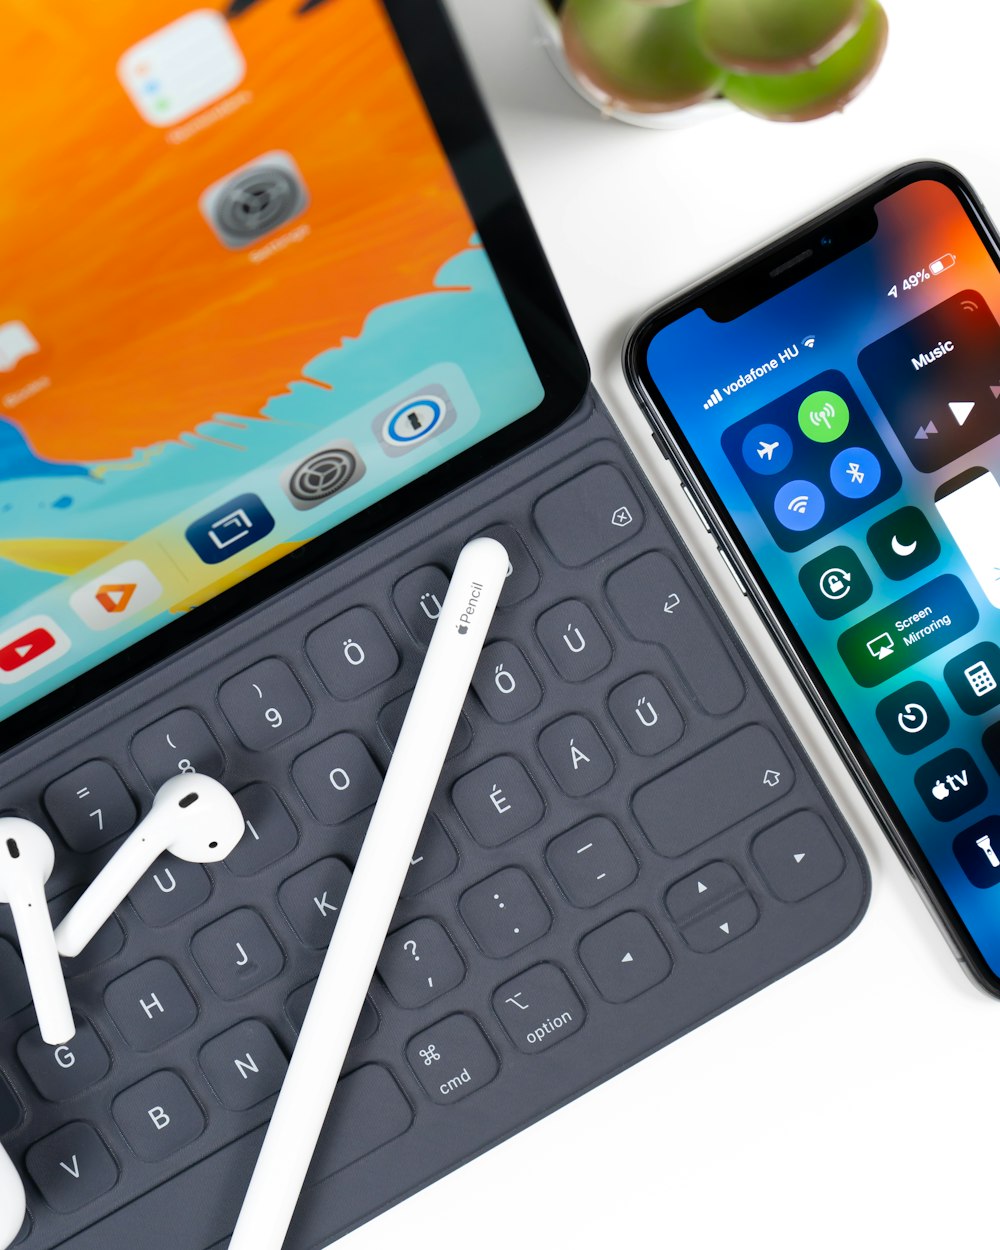 iPad con tastiera, stilo bianco, AirPods bianchi; e un iPhone sul tavolo